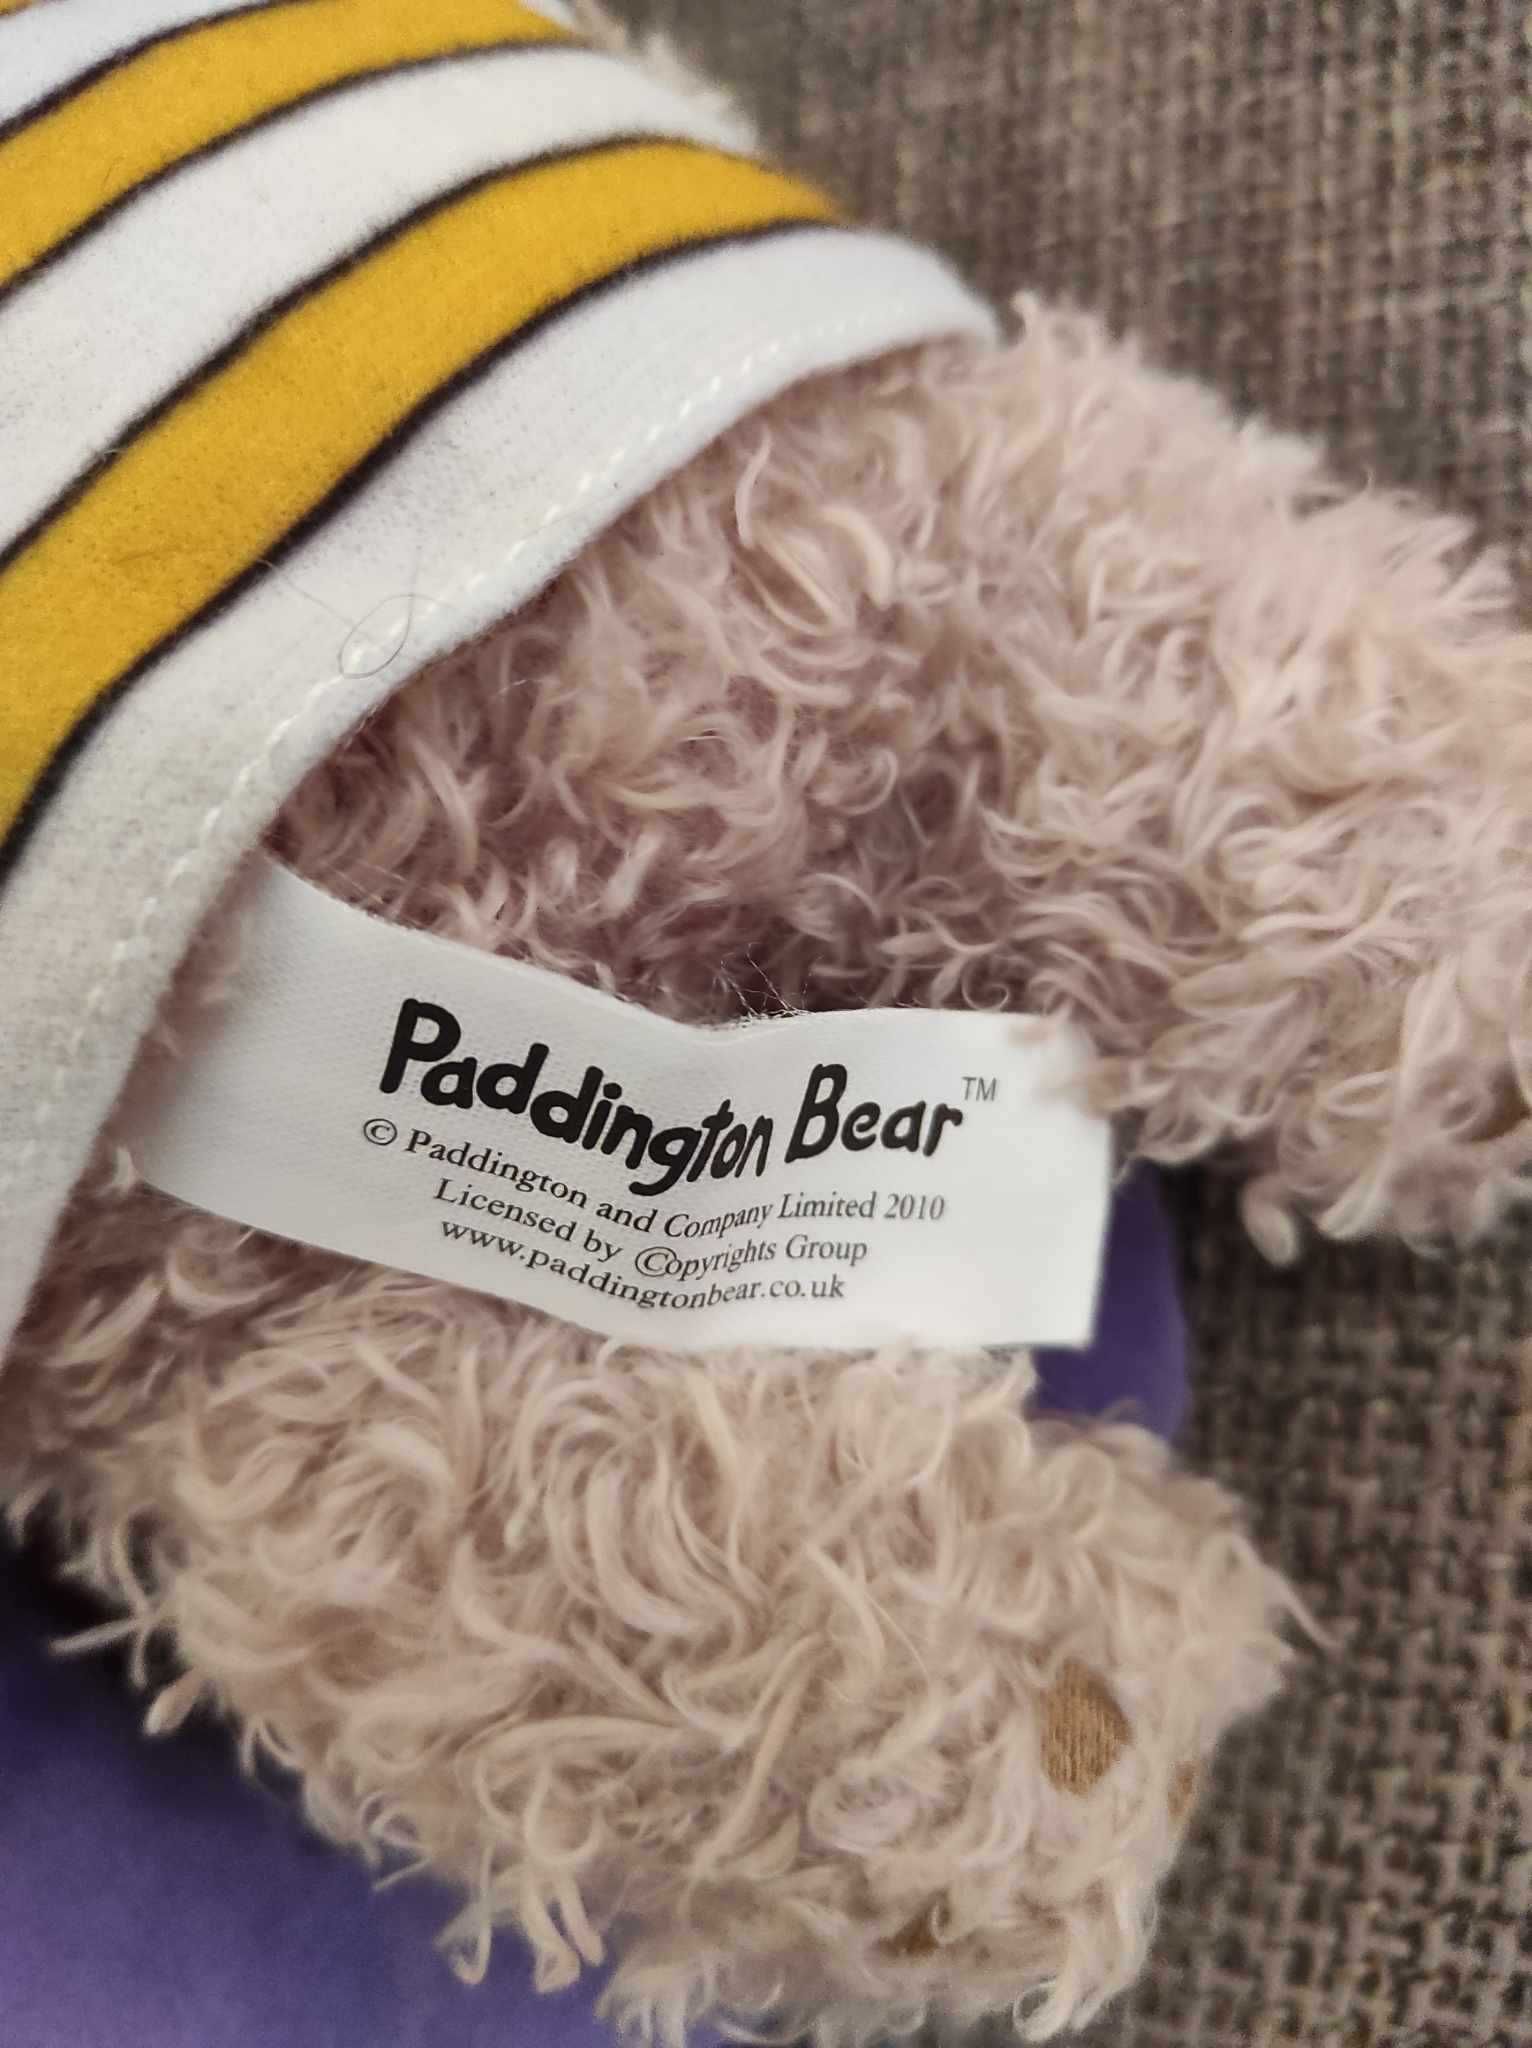 Мяка плюшева іграшка ведмедик Падінгтон Paddington